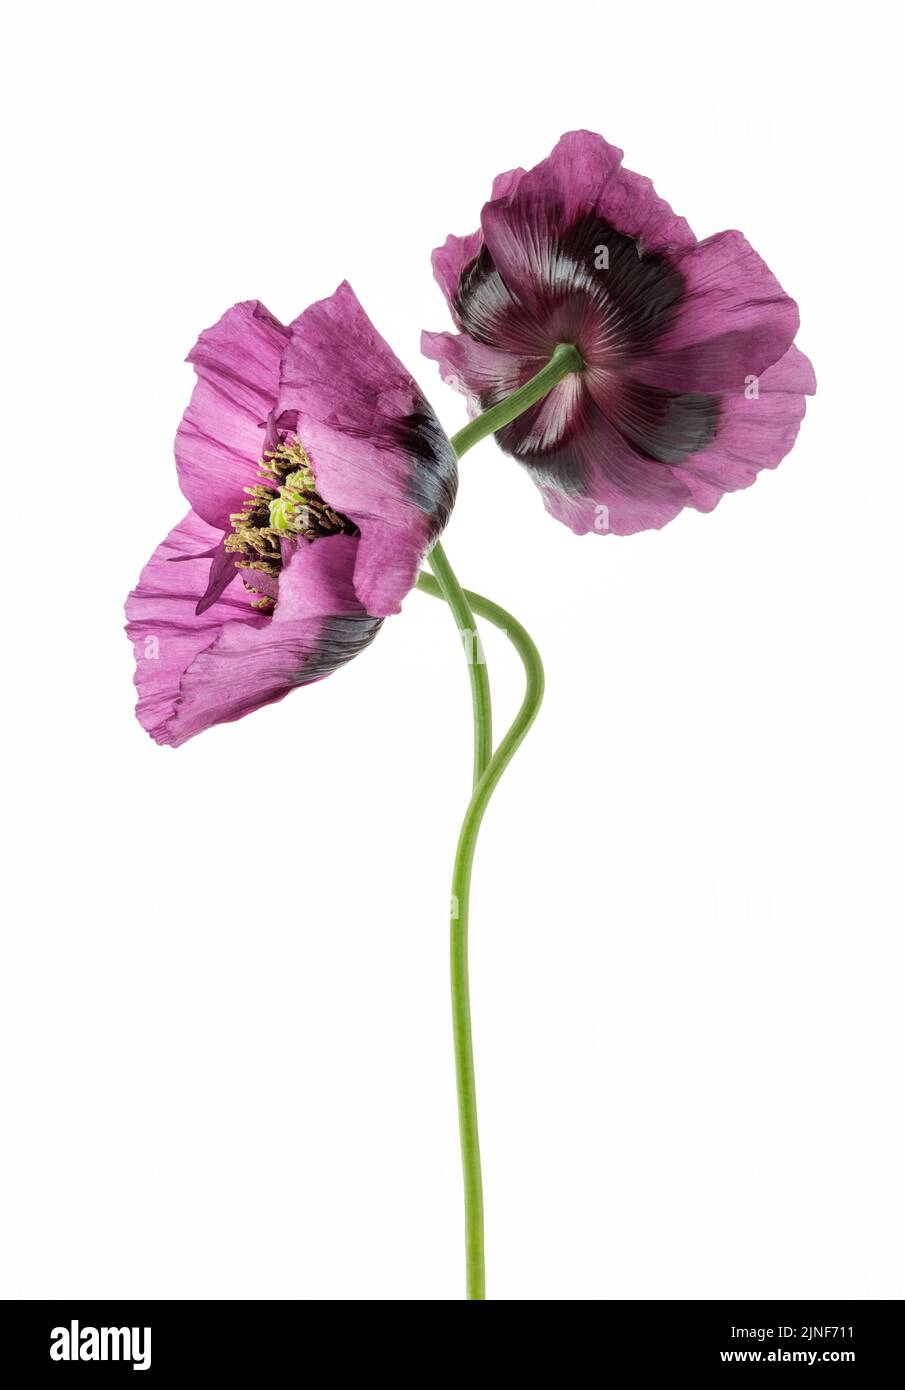 Deux coquelicots violets en fleur sur fond blanc Banque D'Images